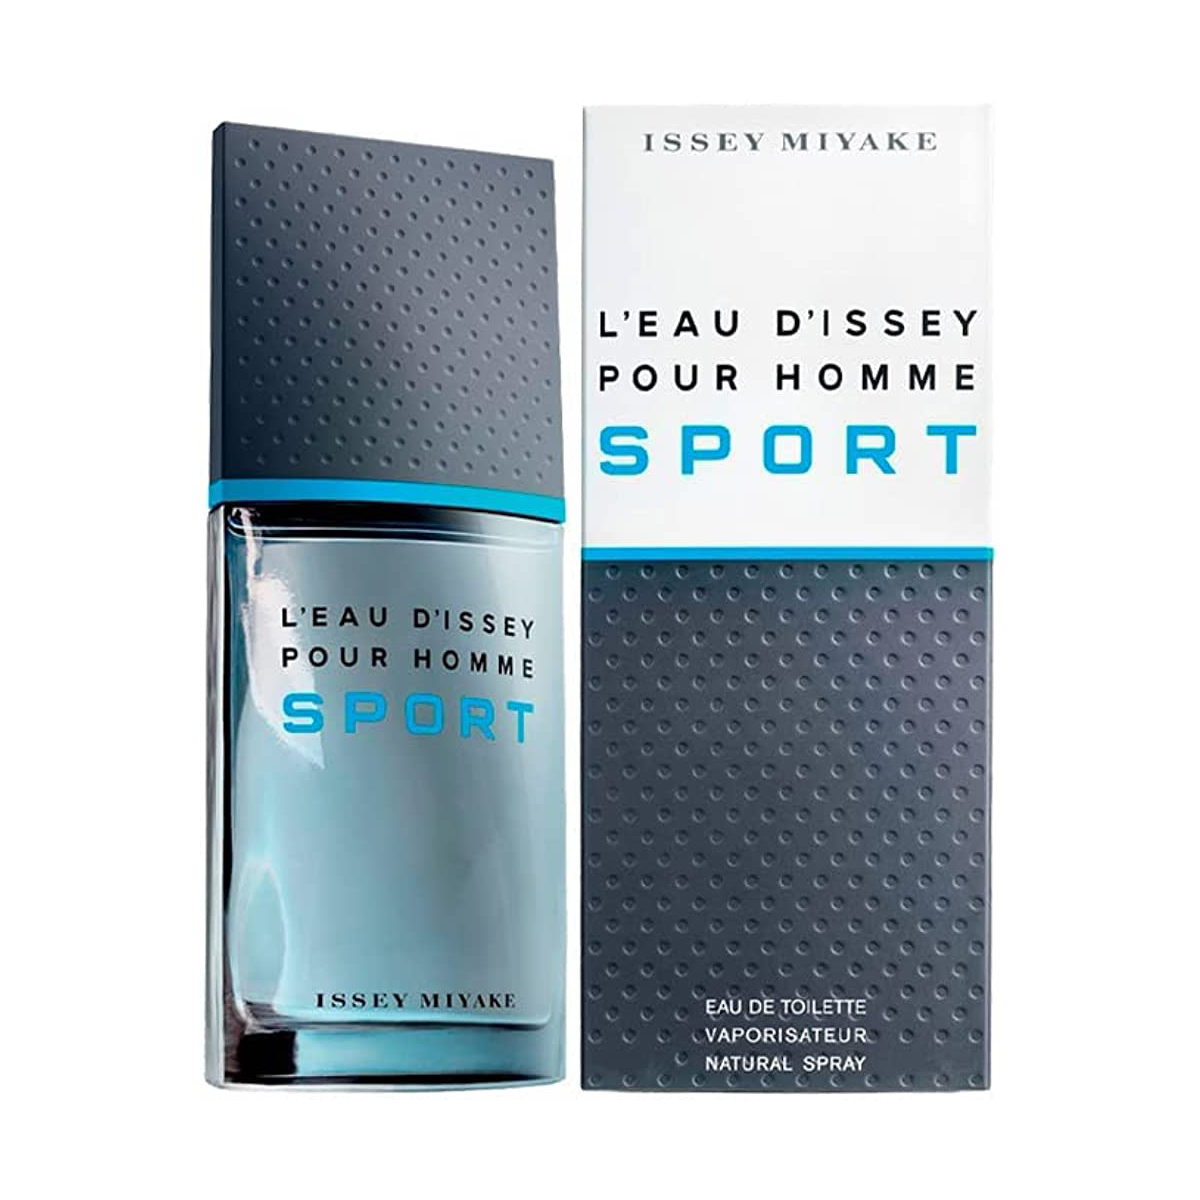 Issey Miyake L’Eau D’Issey Pour Homme Sport for Men Eau De Toilette EDT 100ml at Ratans Online Shop - Perfumes Wholesale and Retailer Fragrance